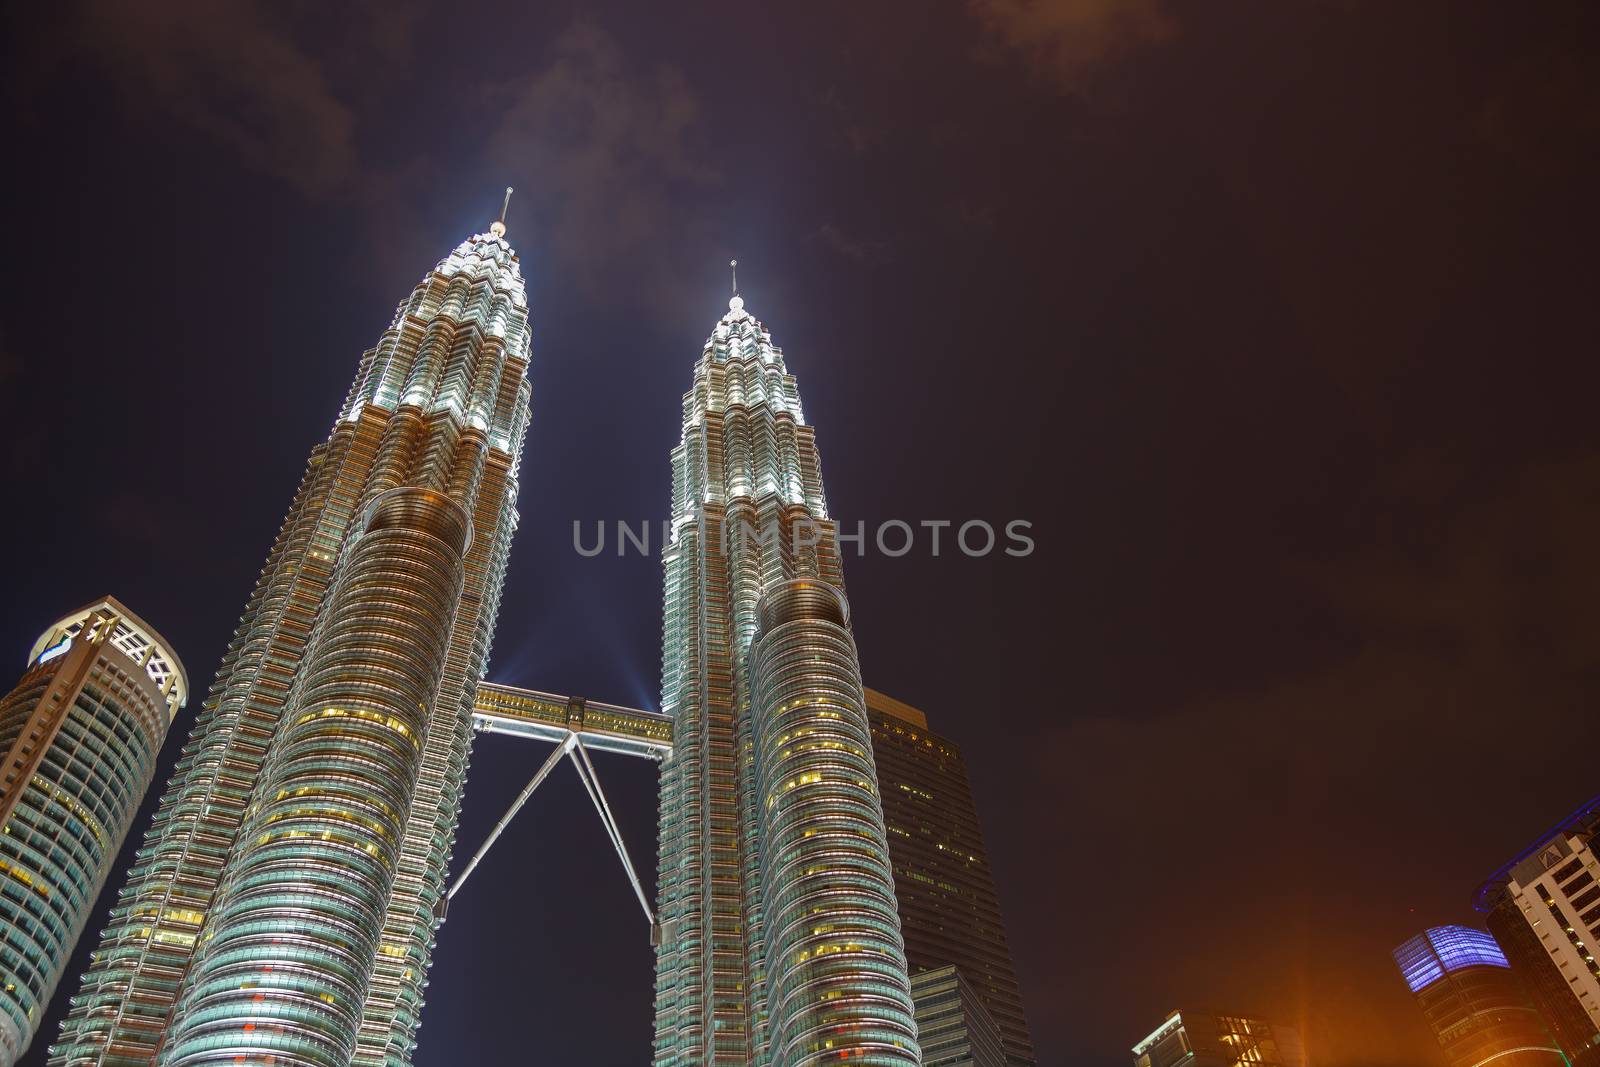 Kuala Lumpur, Malaysia - CIRCA 2017: Night view of KLCC or Petronas Towers, also known as the Petronas Twin Towers are twin skyscrapers in Kuala Lumpur.